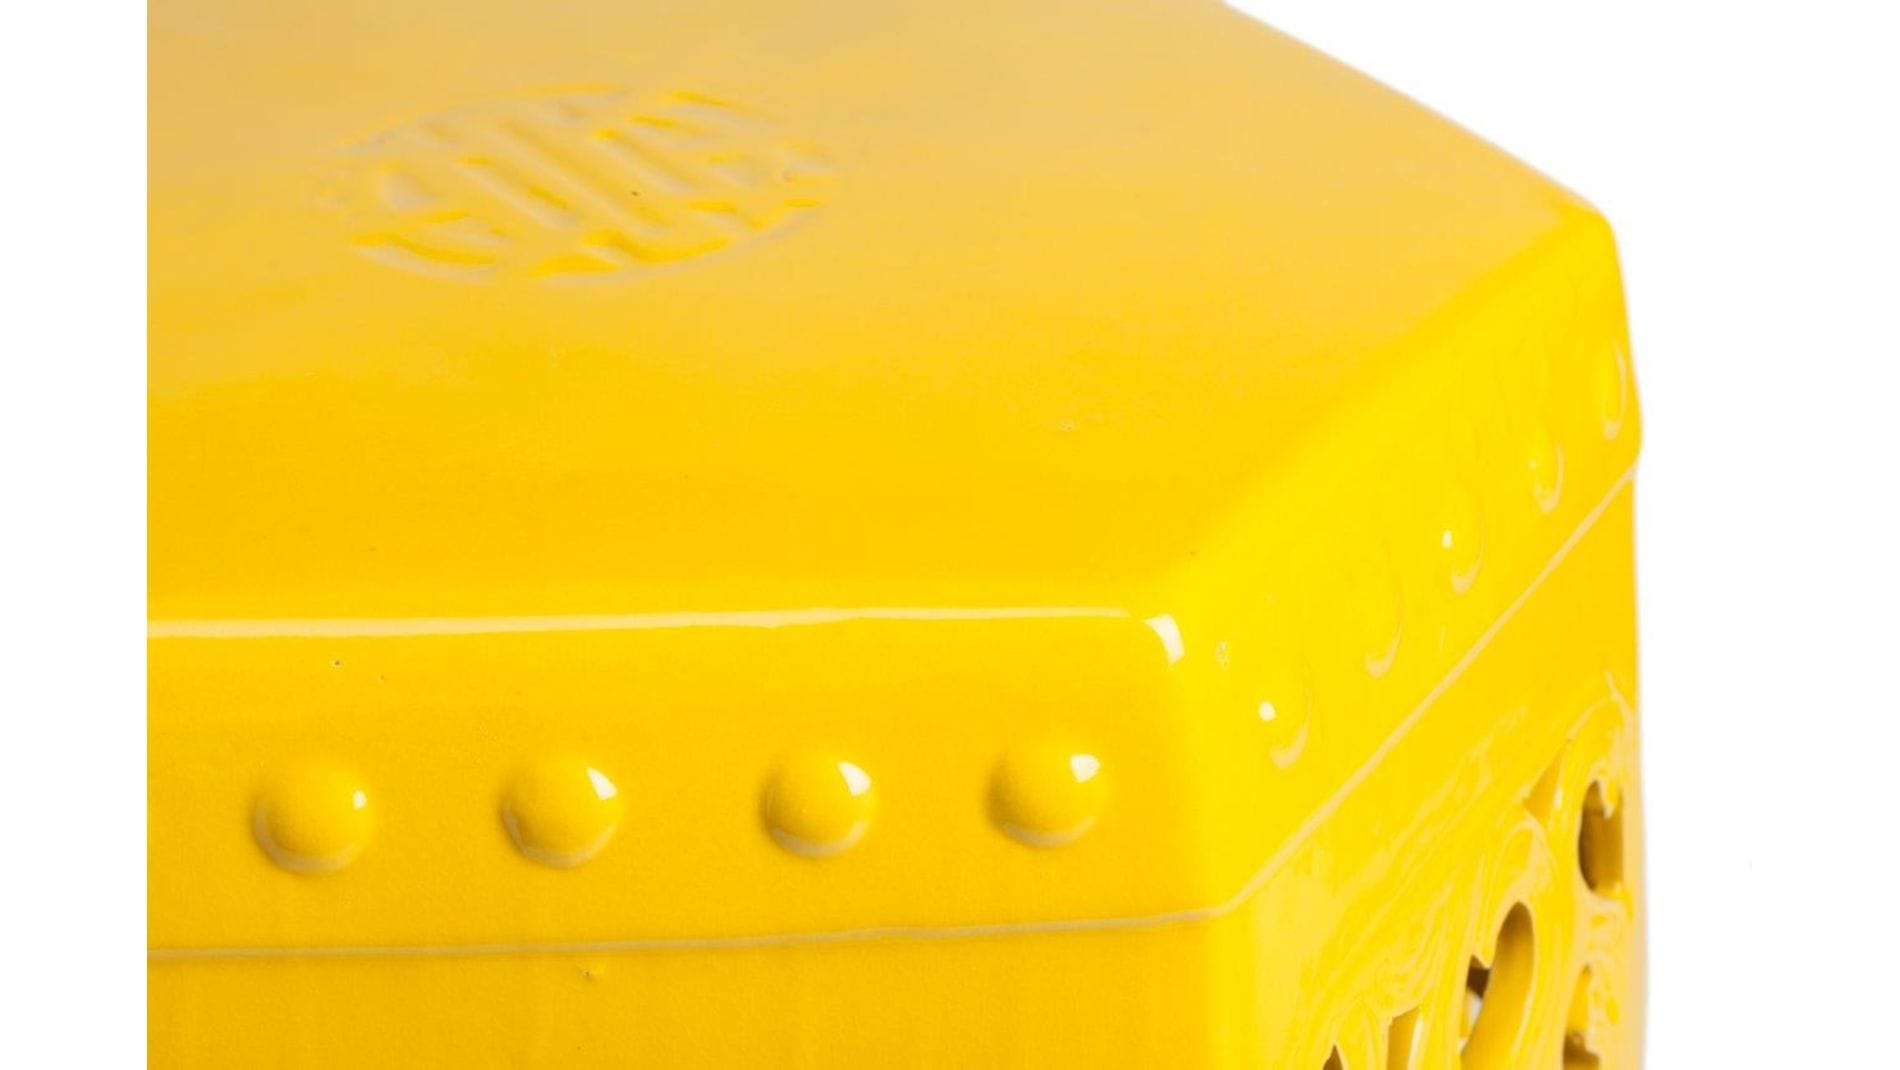 Керамический столик-табурет Design Stool Yellow